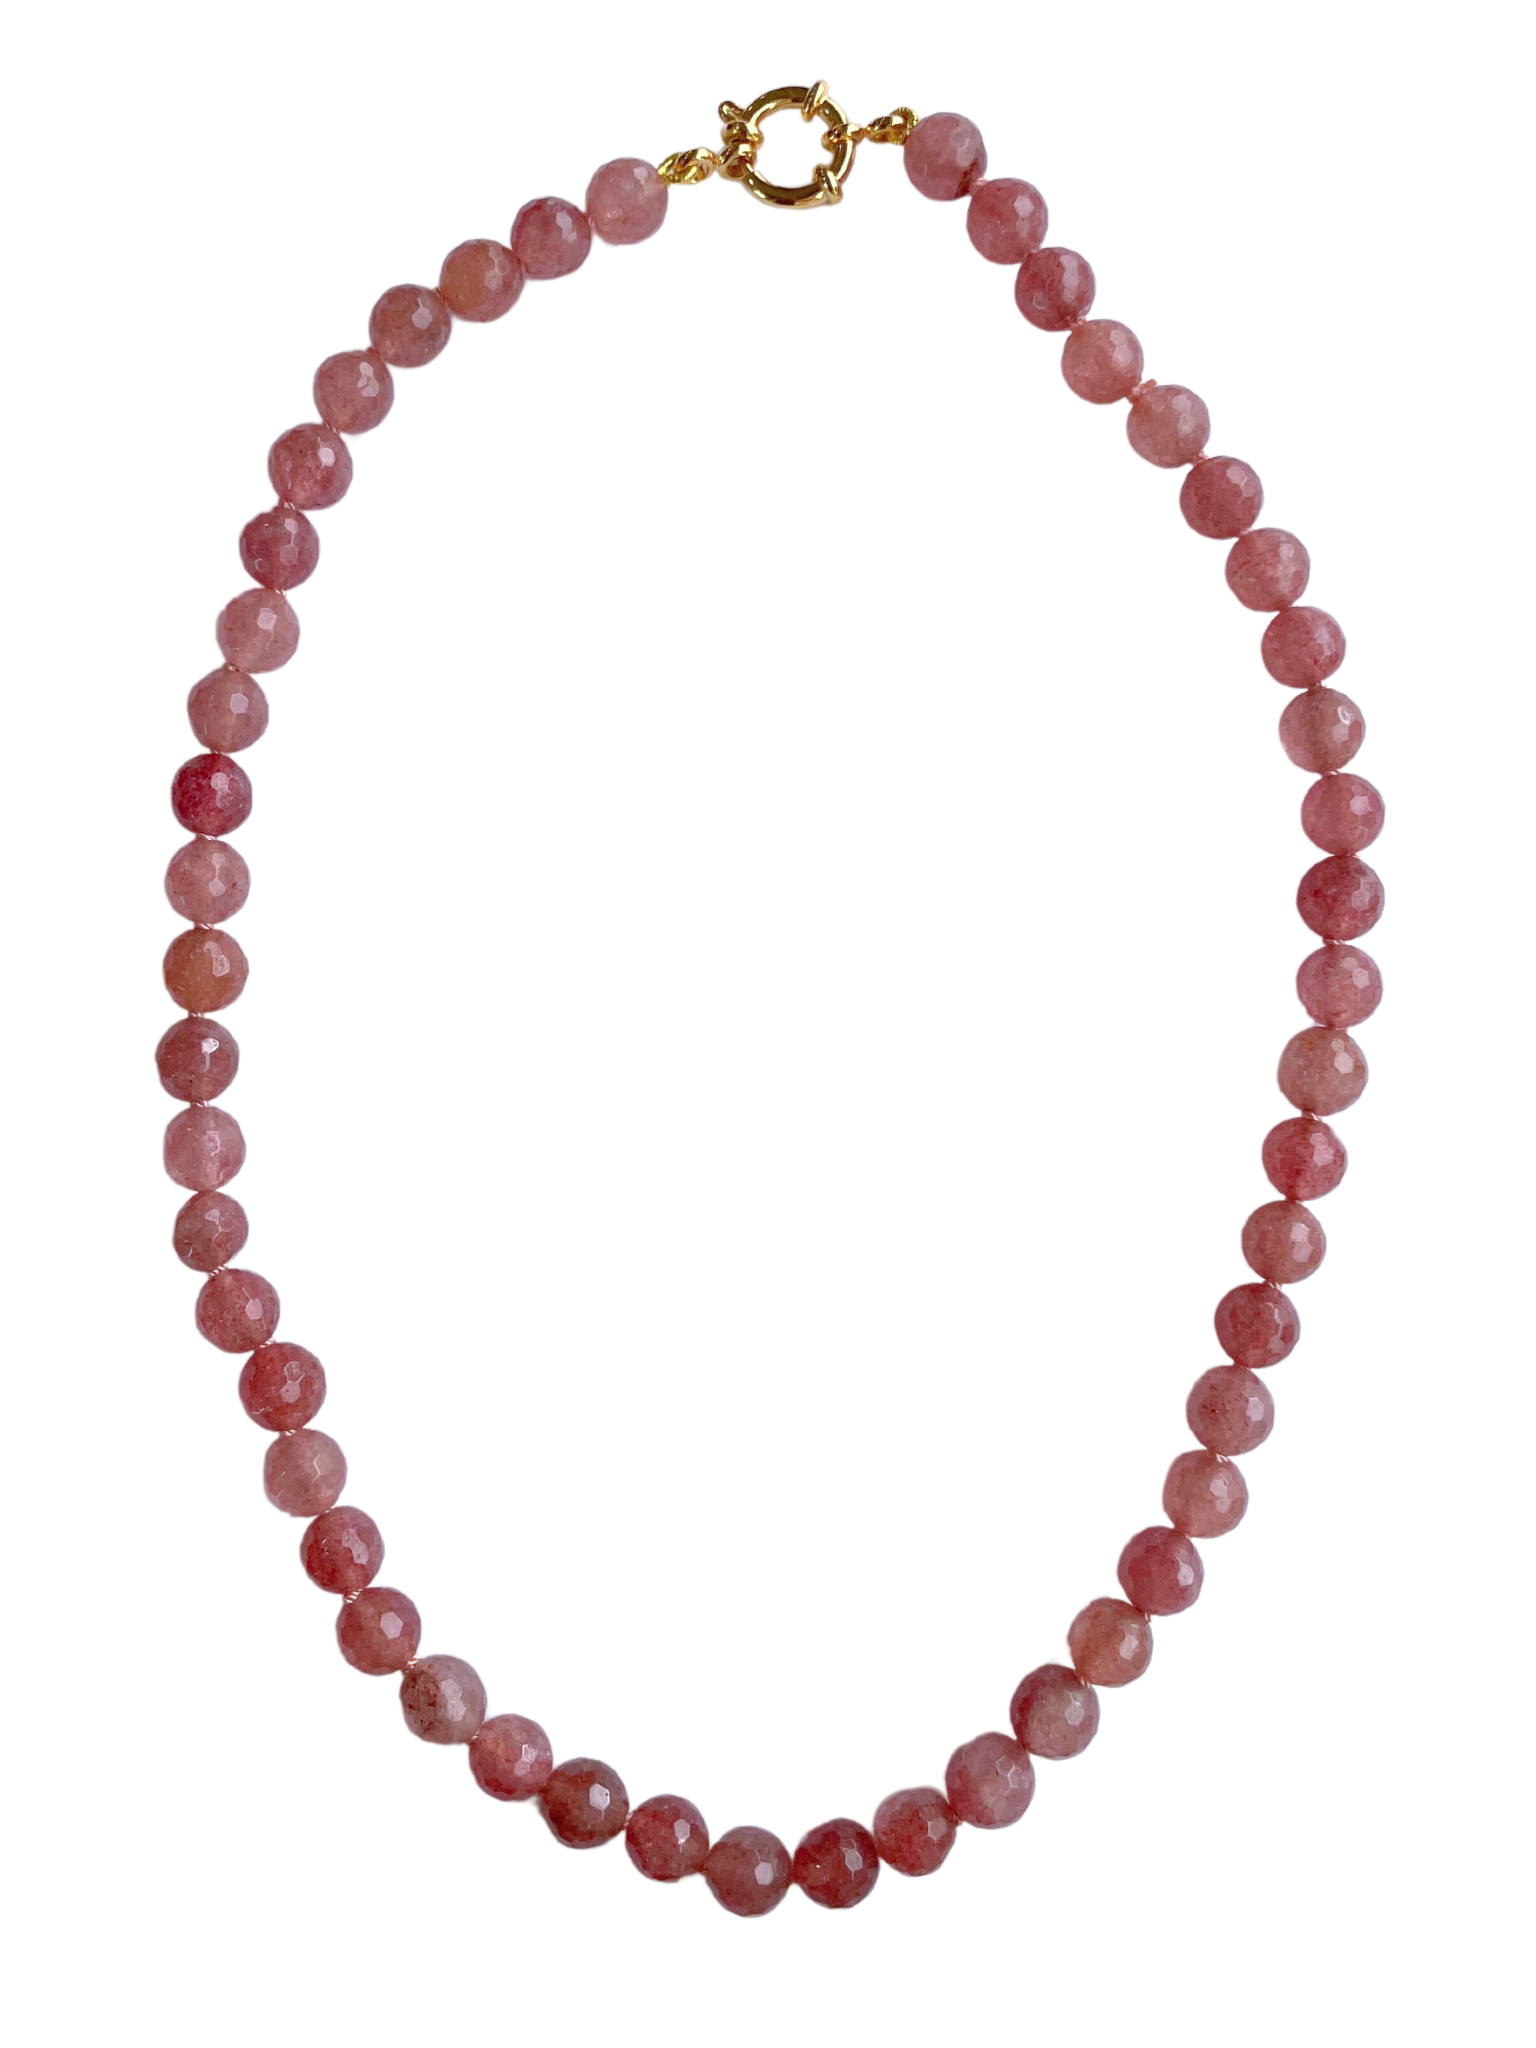 JEWELRY Rose Quartz Beaded Necklace Teressa Shepherd